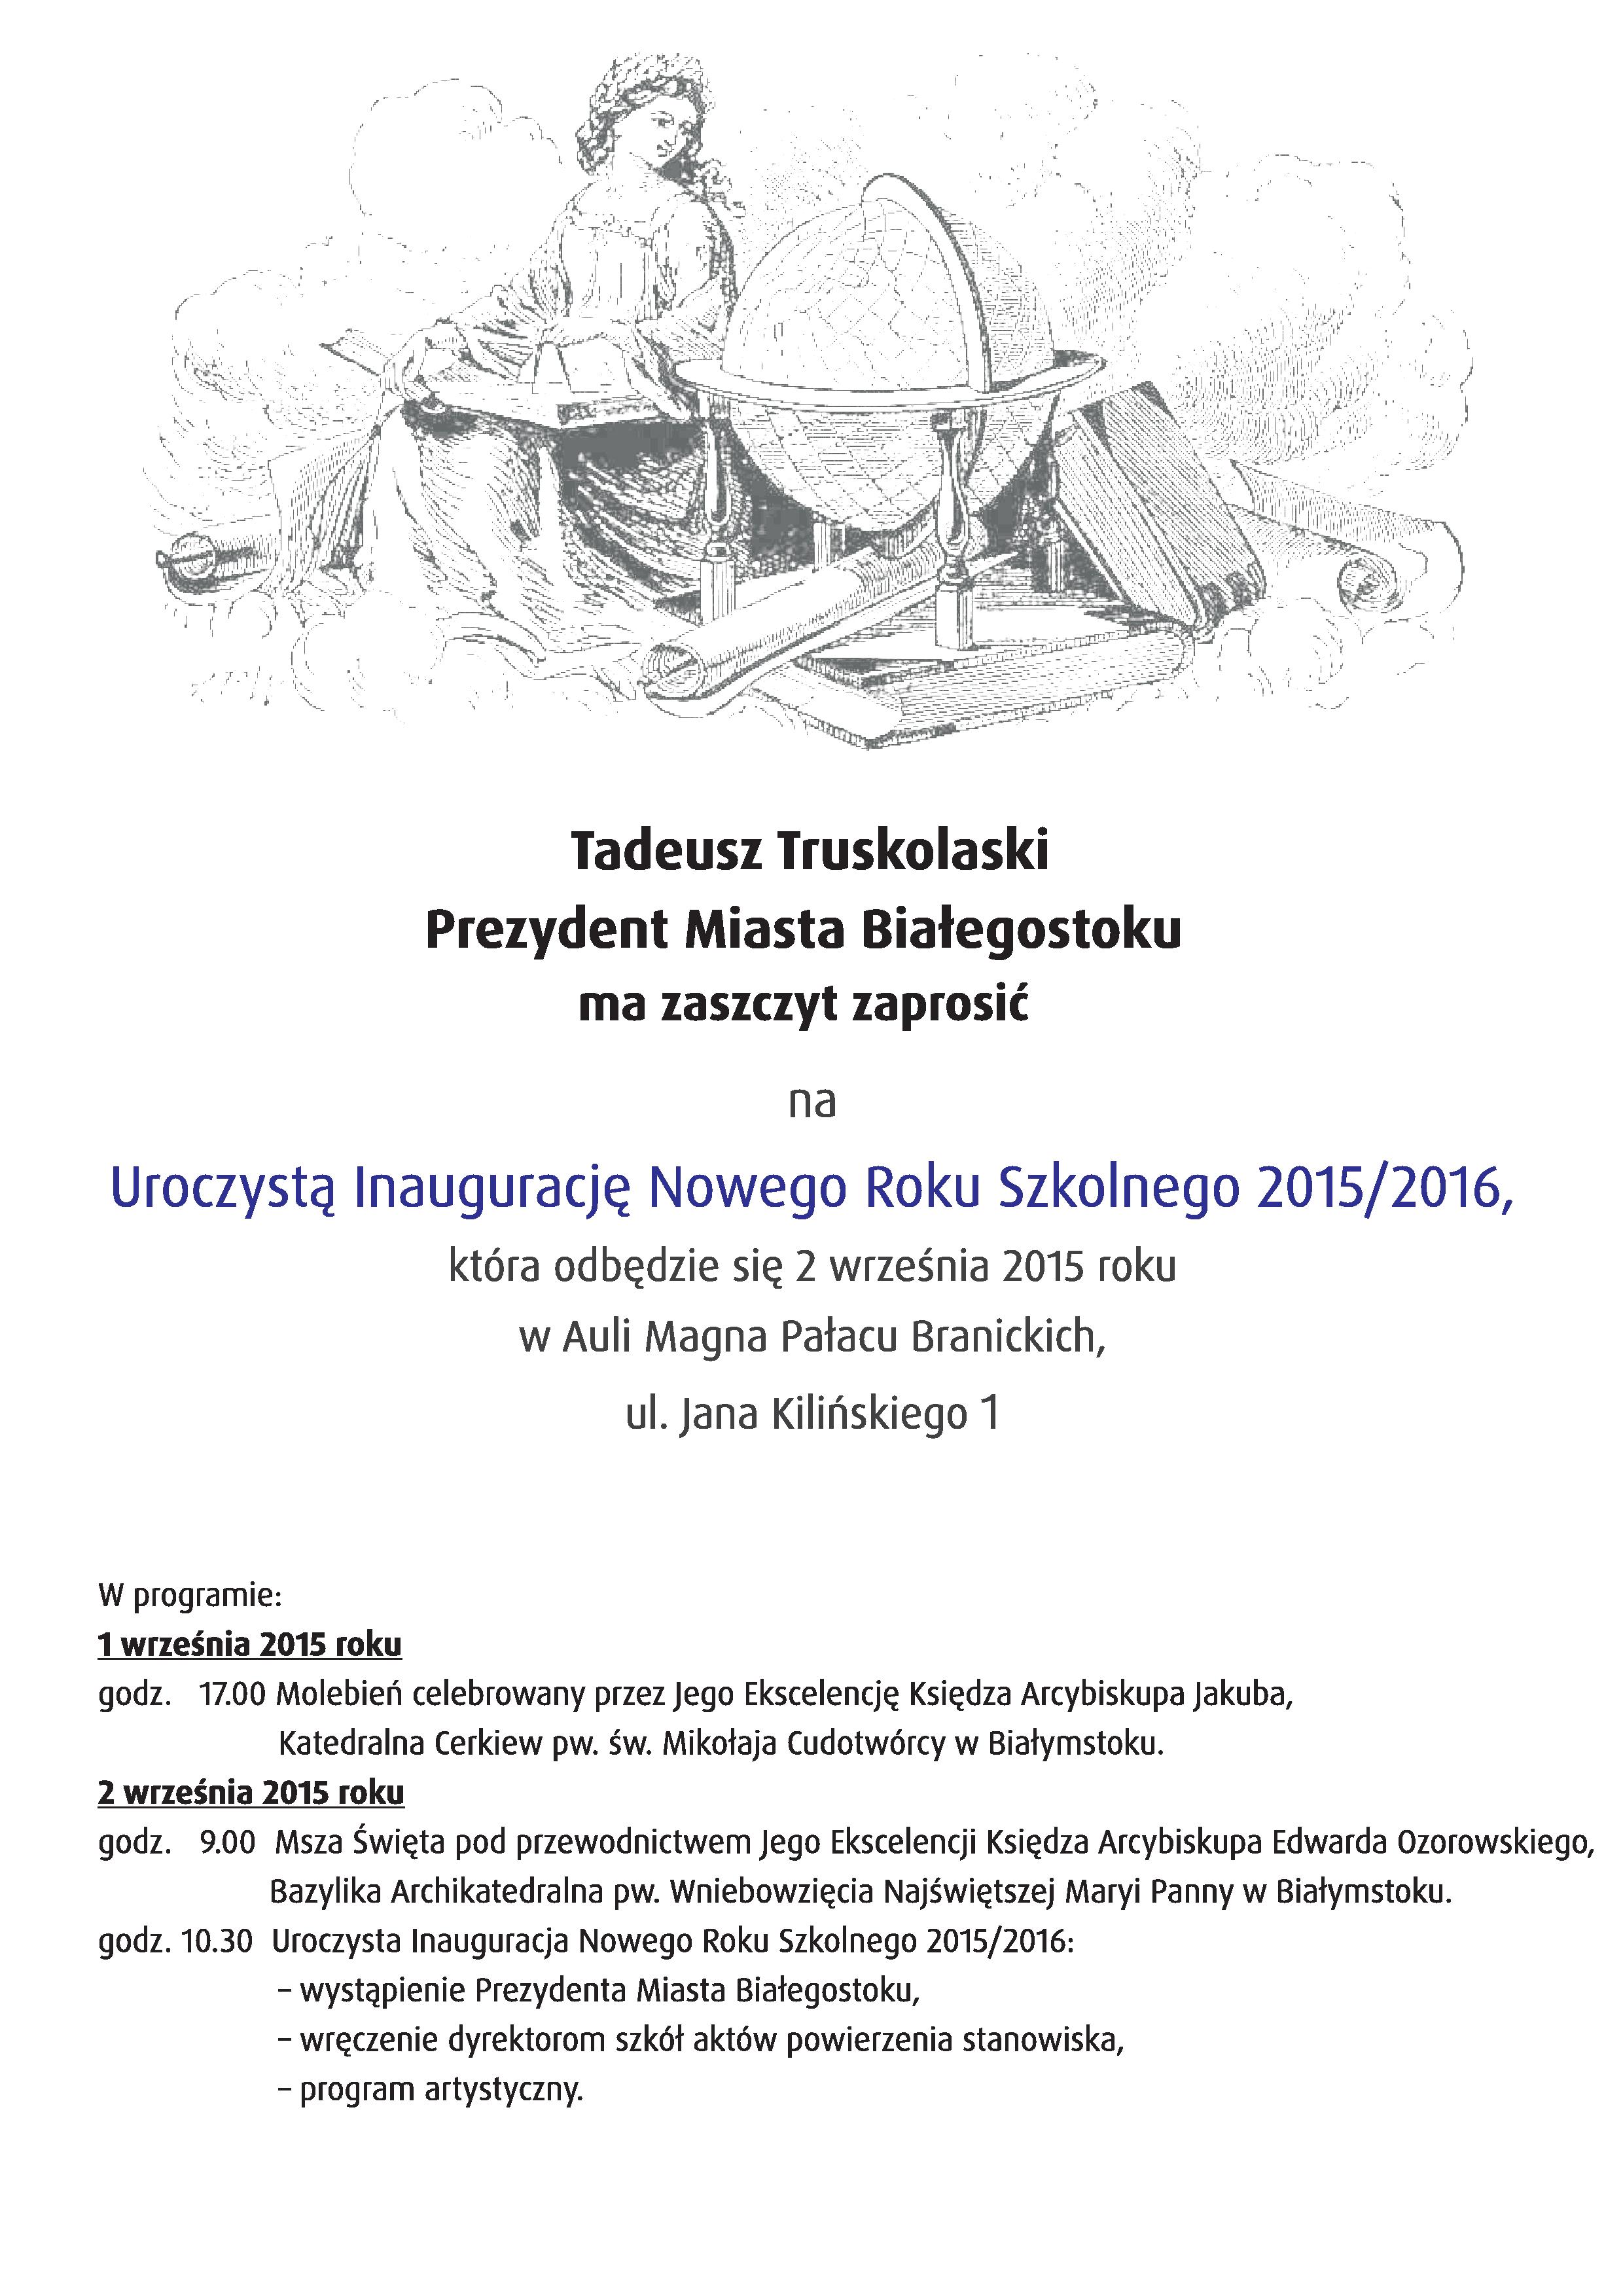 Zaproszenie na uroczystą inaugurację Nowego Roku Szkolnego 2015/2016